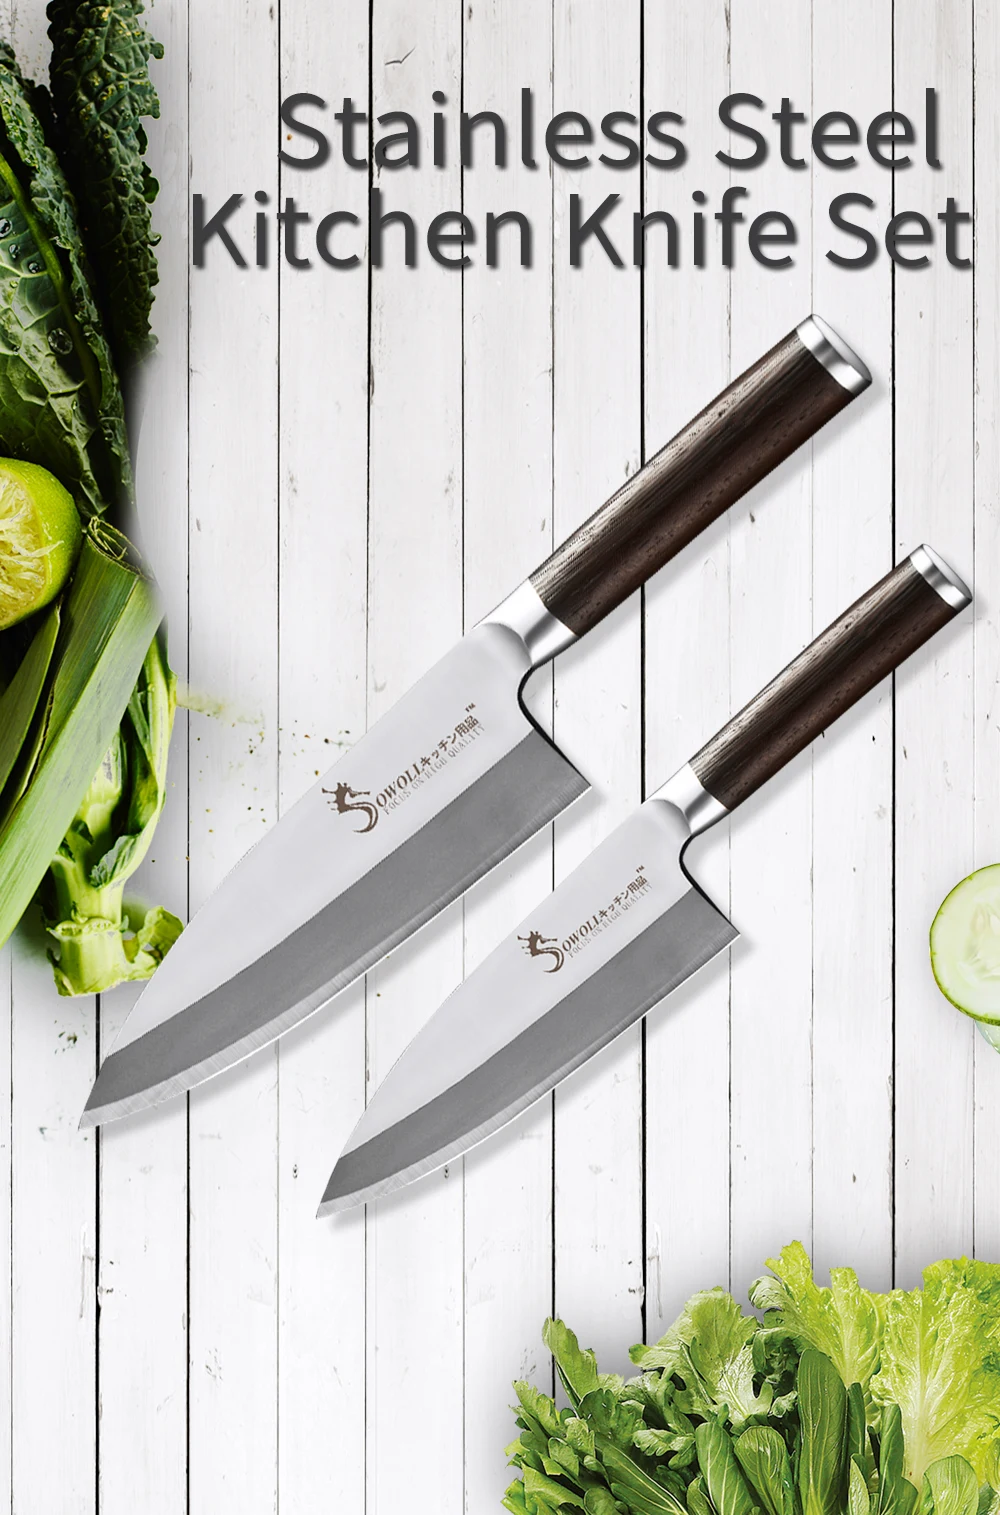 Sowoll Кухня Ножи набор Профессиональные Кухонные ножи Набор японский, из нержавеющей стали Кухня Ножи комплект дерево венге ручка Острый кухонный топорик